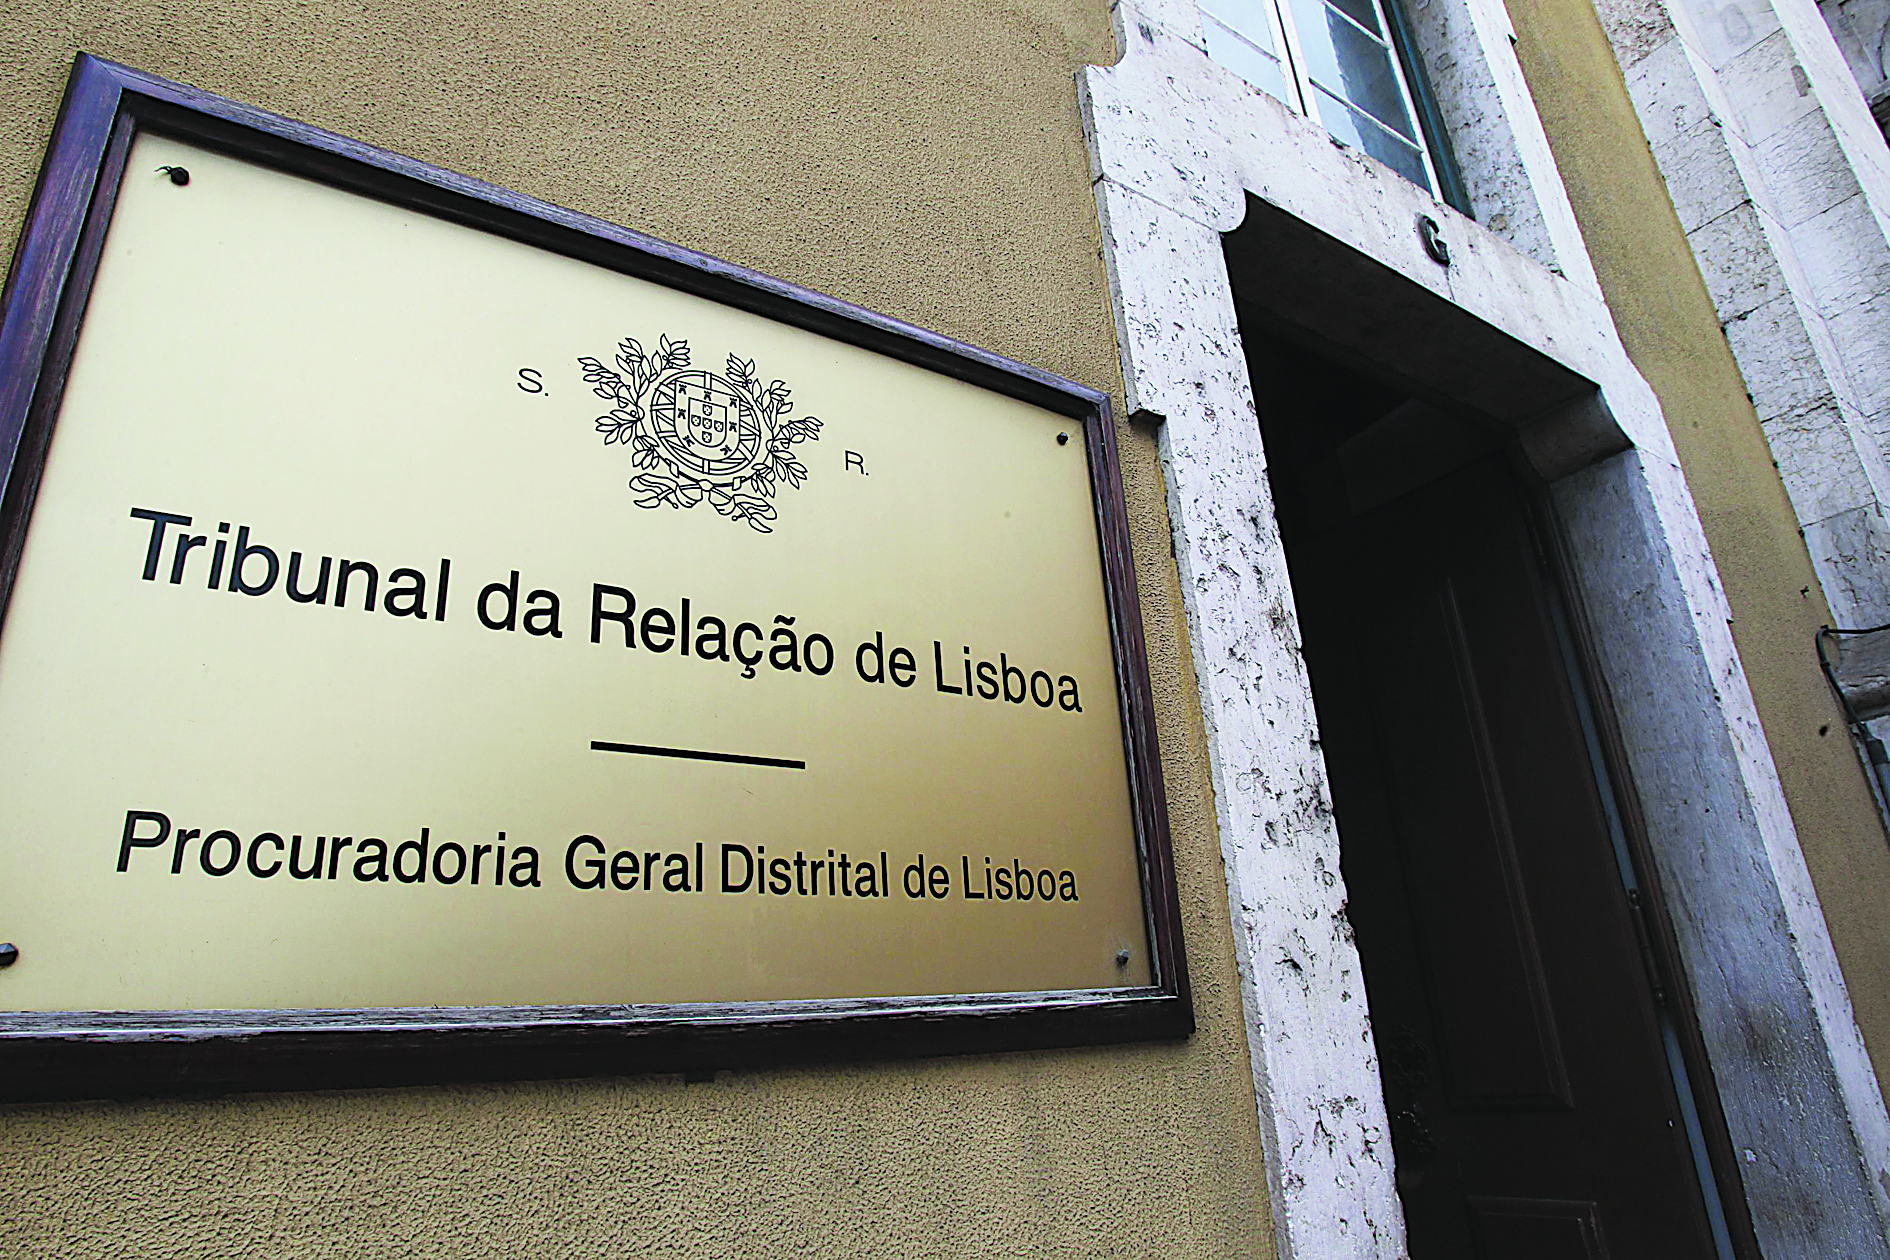 Vistos gold: Relação rejeita aclaração de acórdão pedido por António Figueiredo